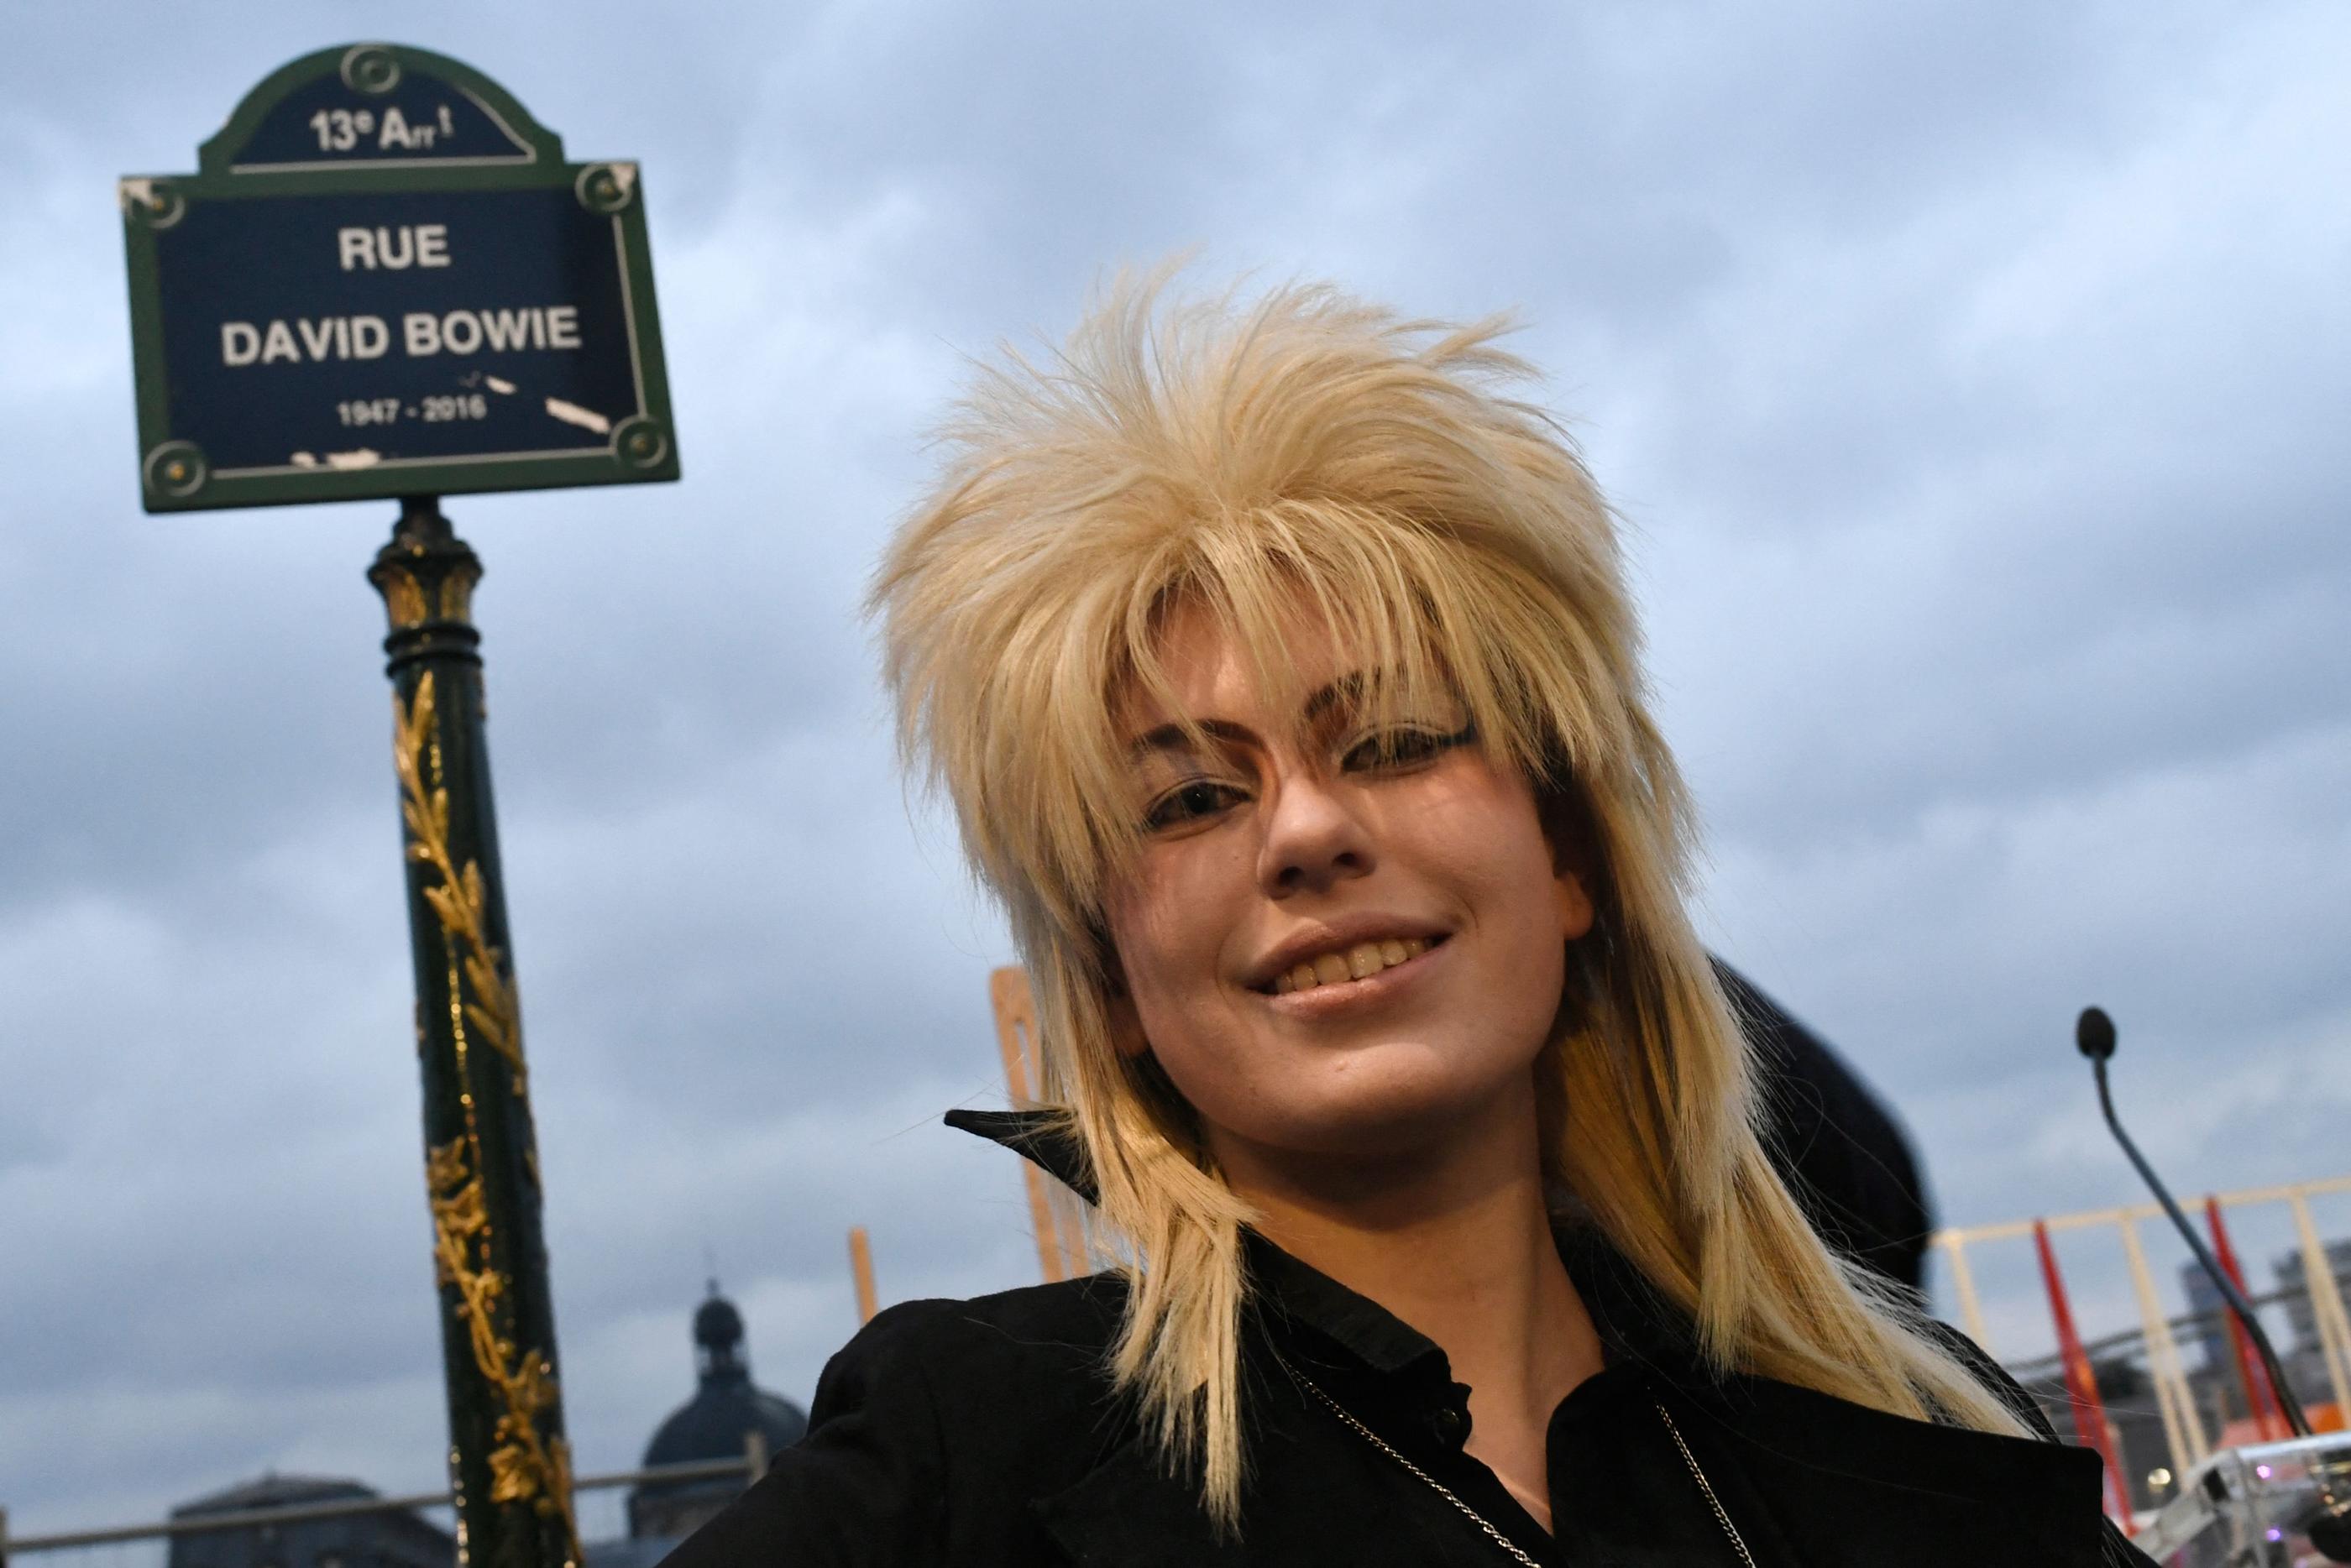 Paris (XIIIe), ce lundi. Une femme pose, coiffée d'une perruque hommage à David Bowie, dans la rue tout juste inaugurée à son nom. AFP/Stéphane de Sakutin